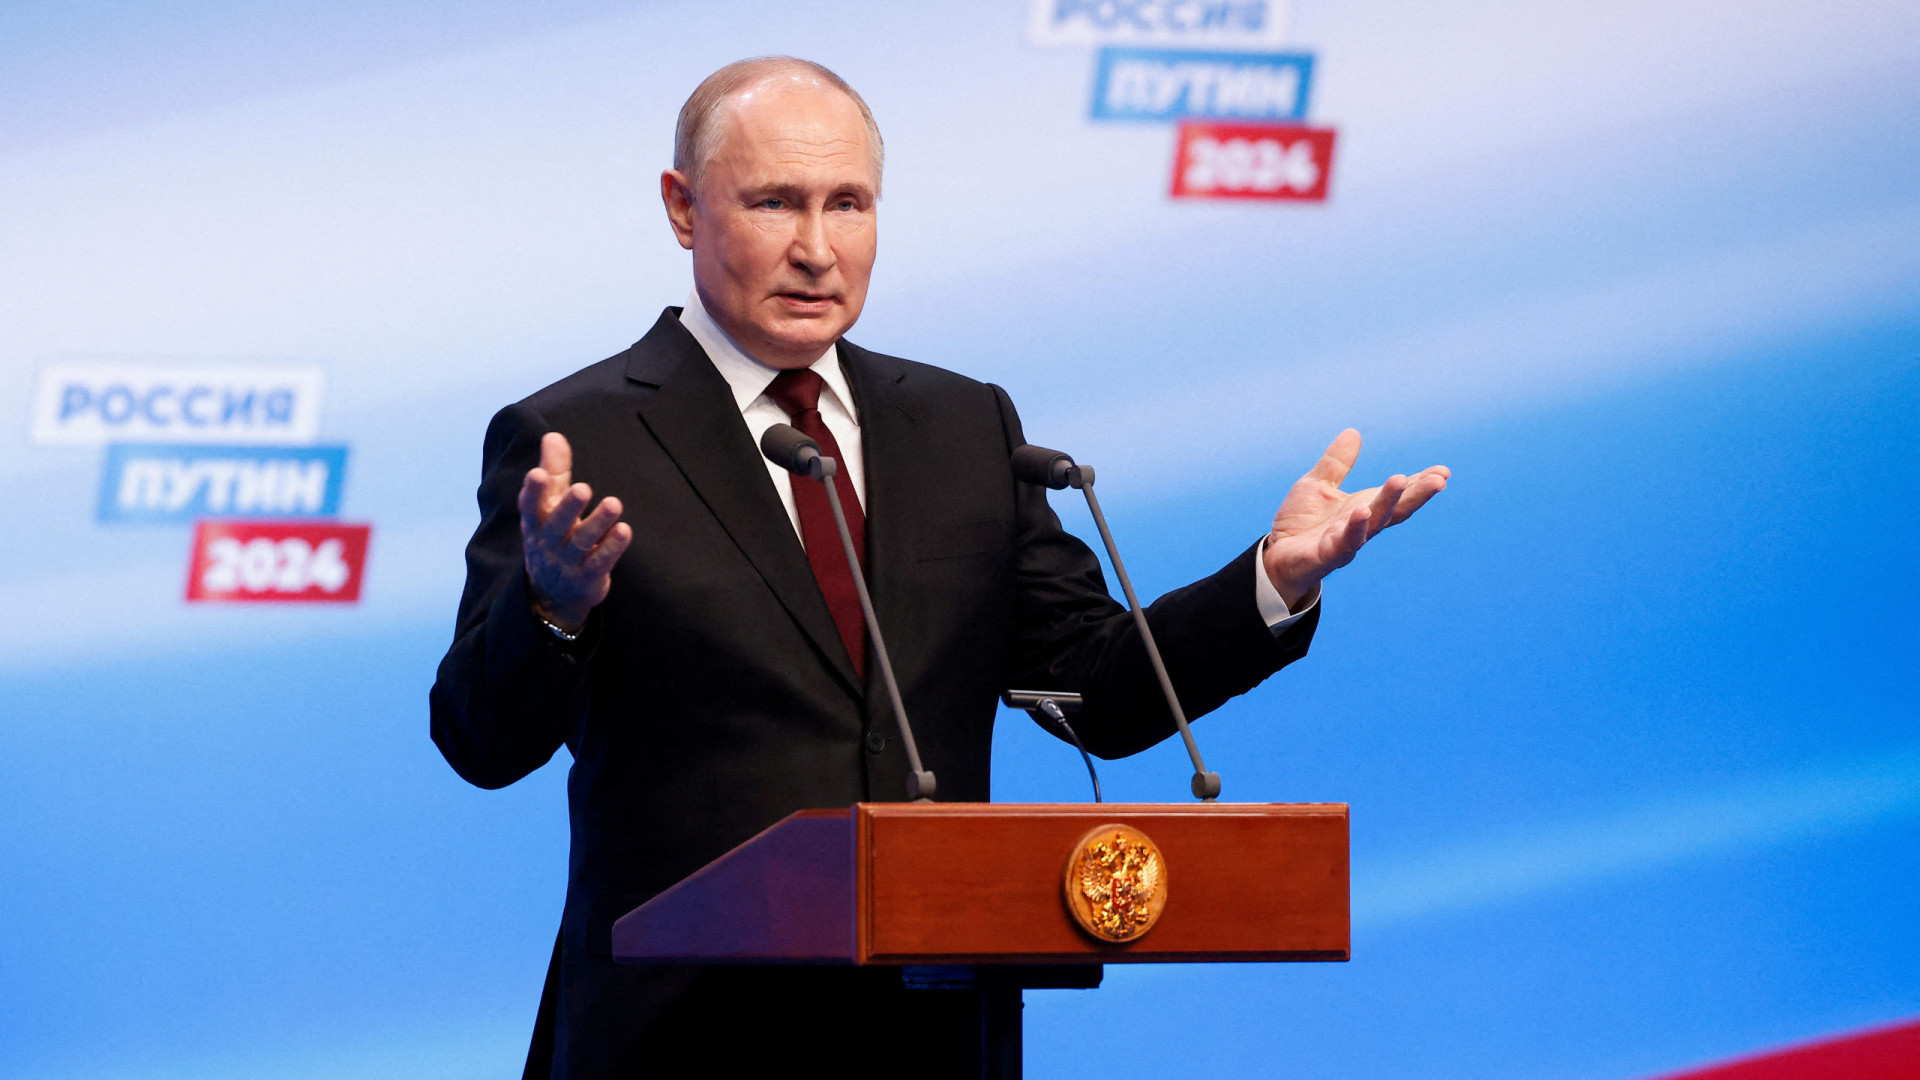 Após ameaças, Putin fala em diálogo com o Ocidente na sua 5ª posse